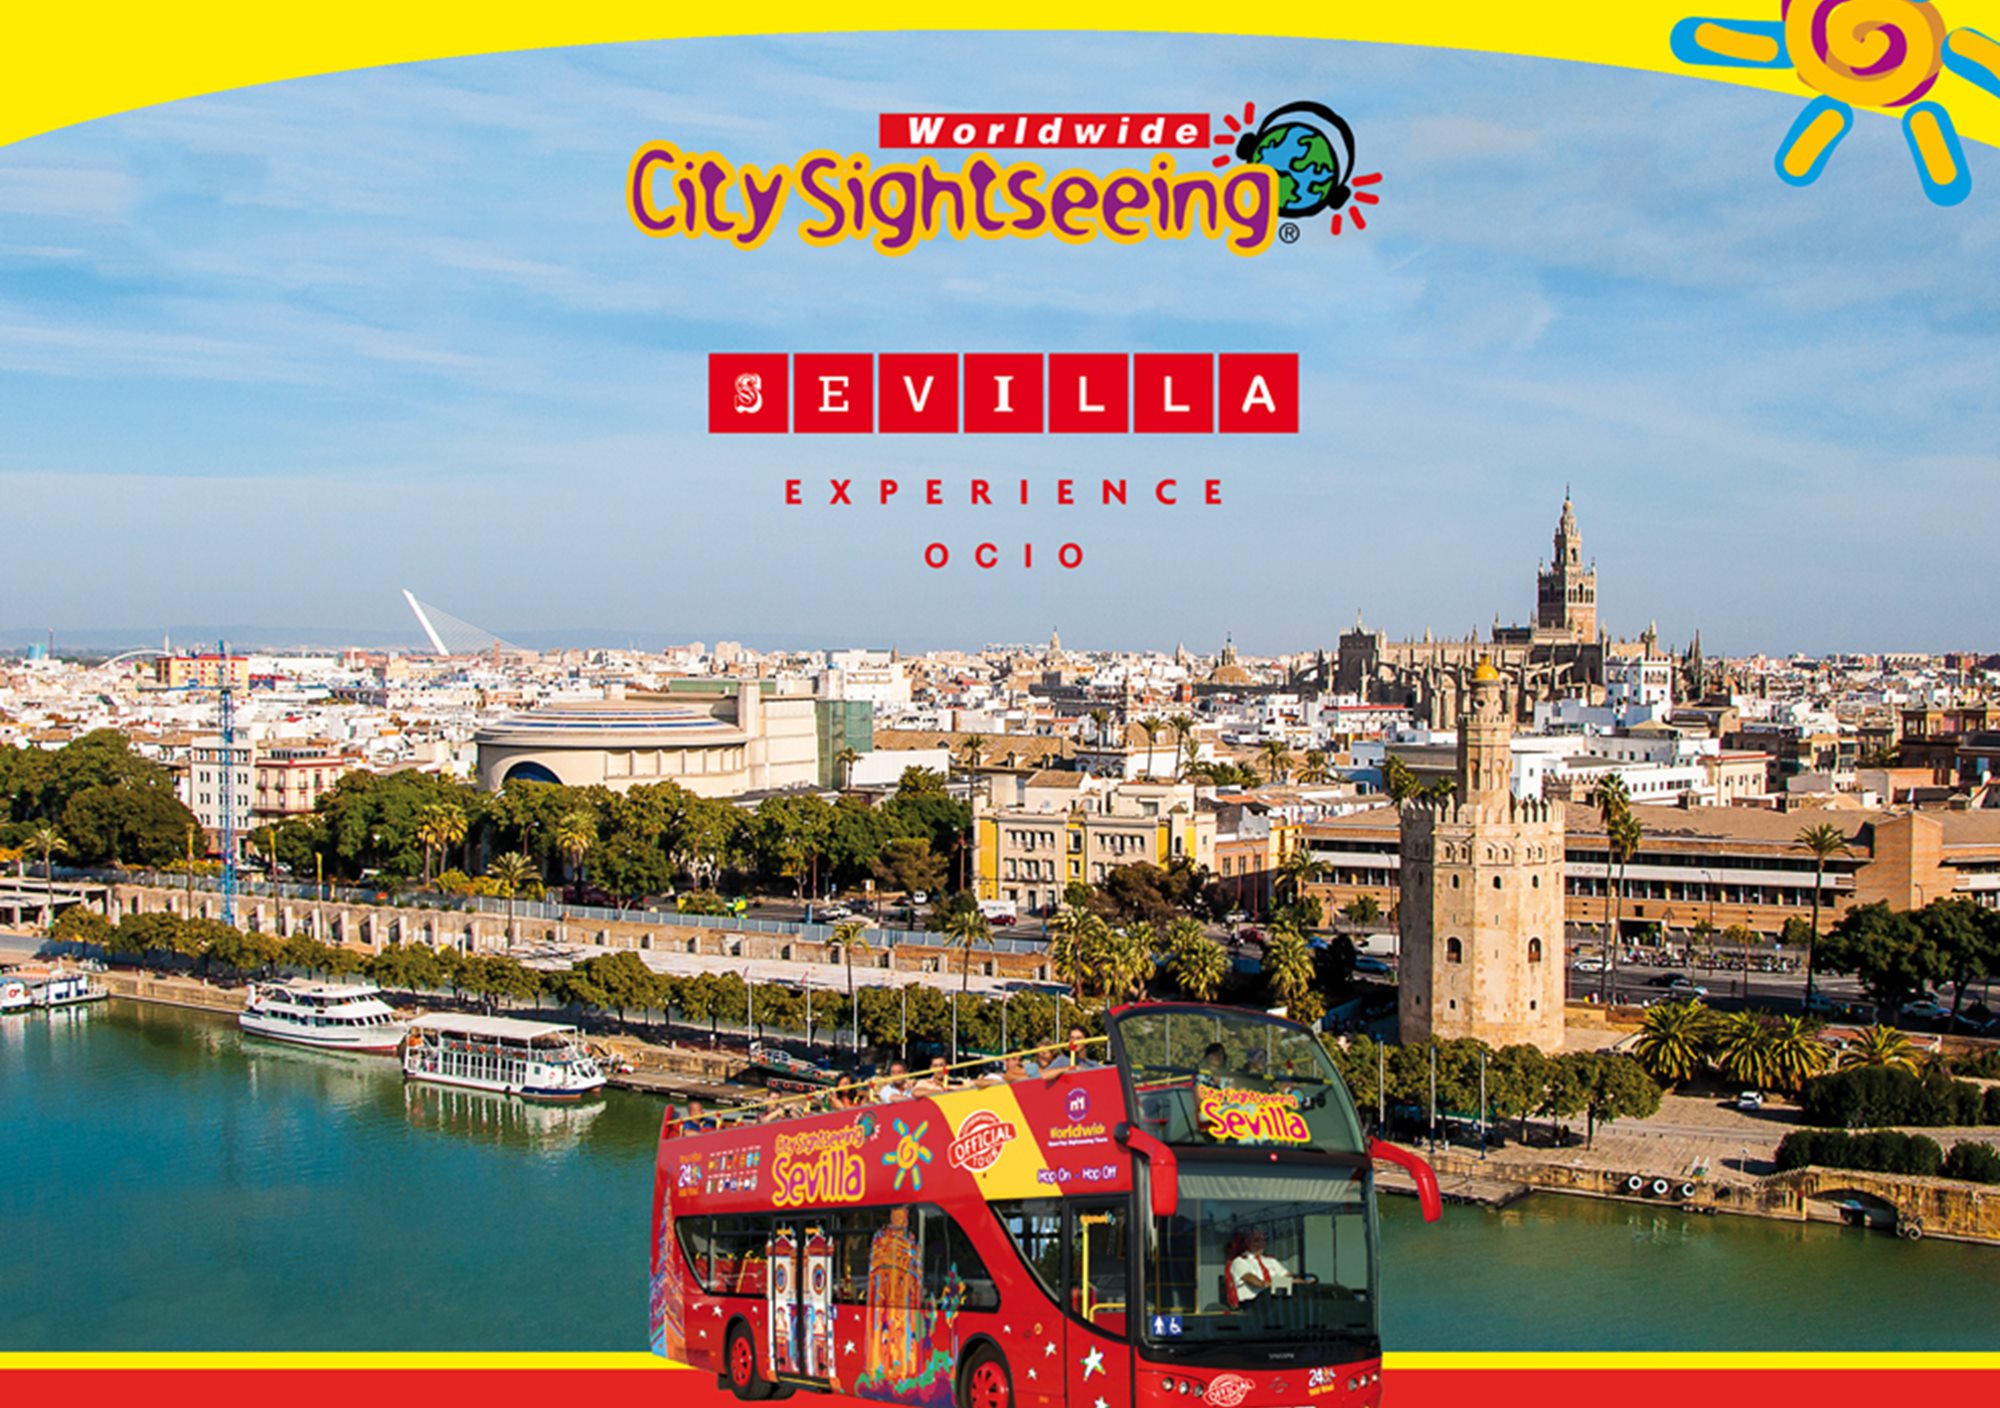 acheter réservations réserver visites guidées tours billets visiter Pass City Sightseeing Sevilla Experience